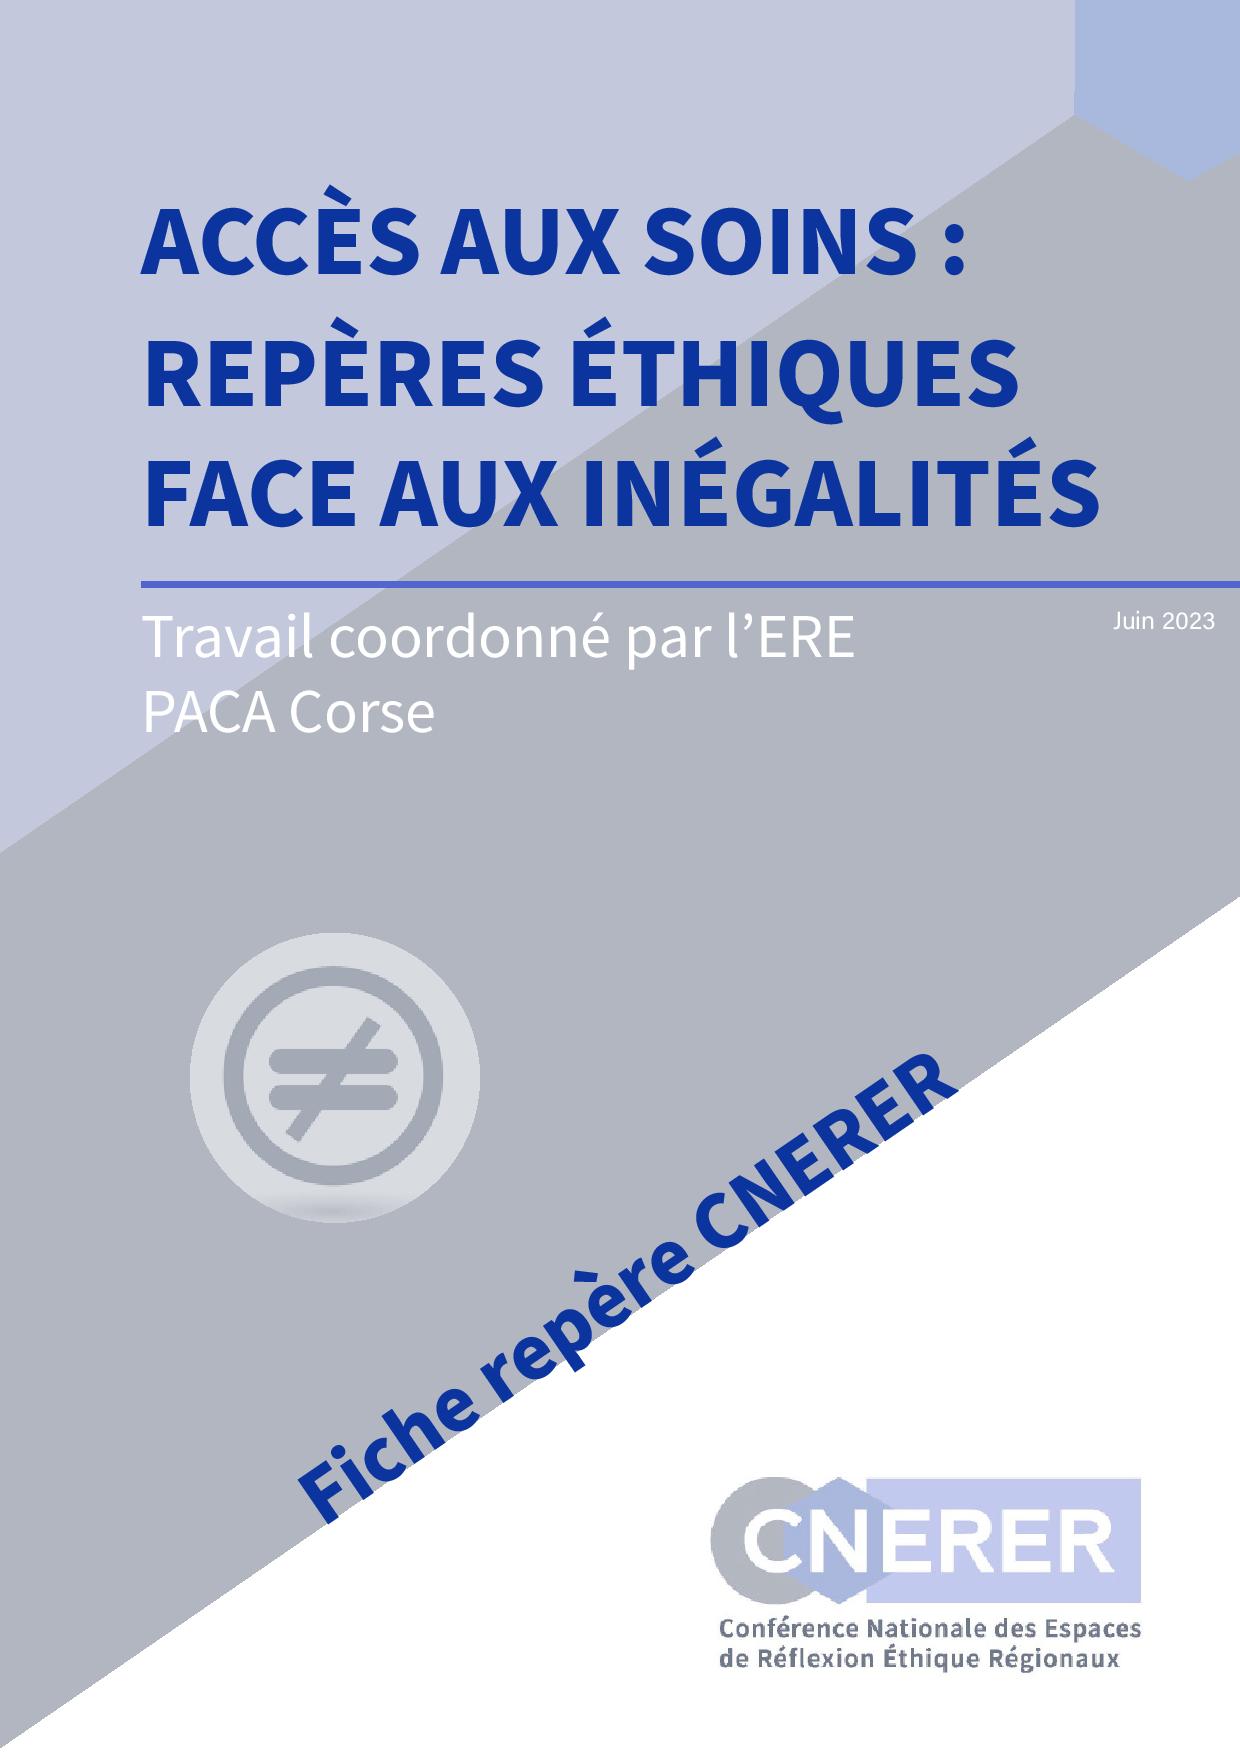 Fiche-CNERER-Acces-aux-soins-1-65099a2f03508(1)-page-001